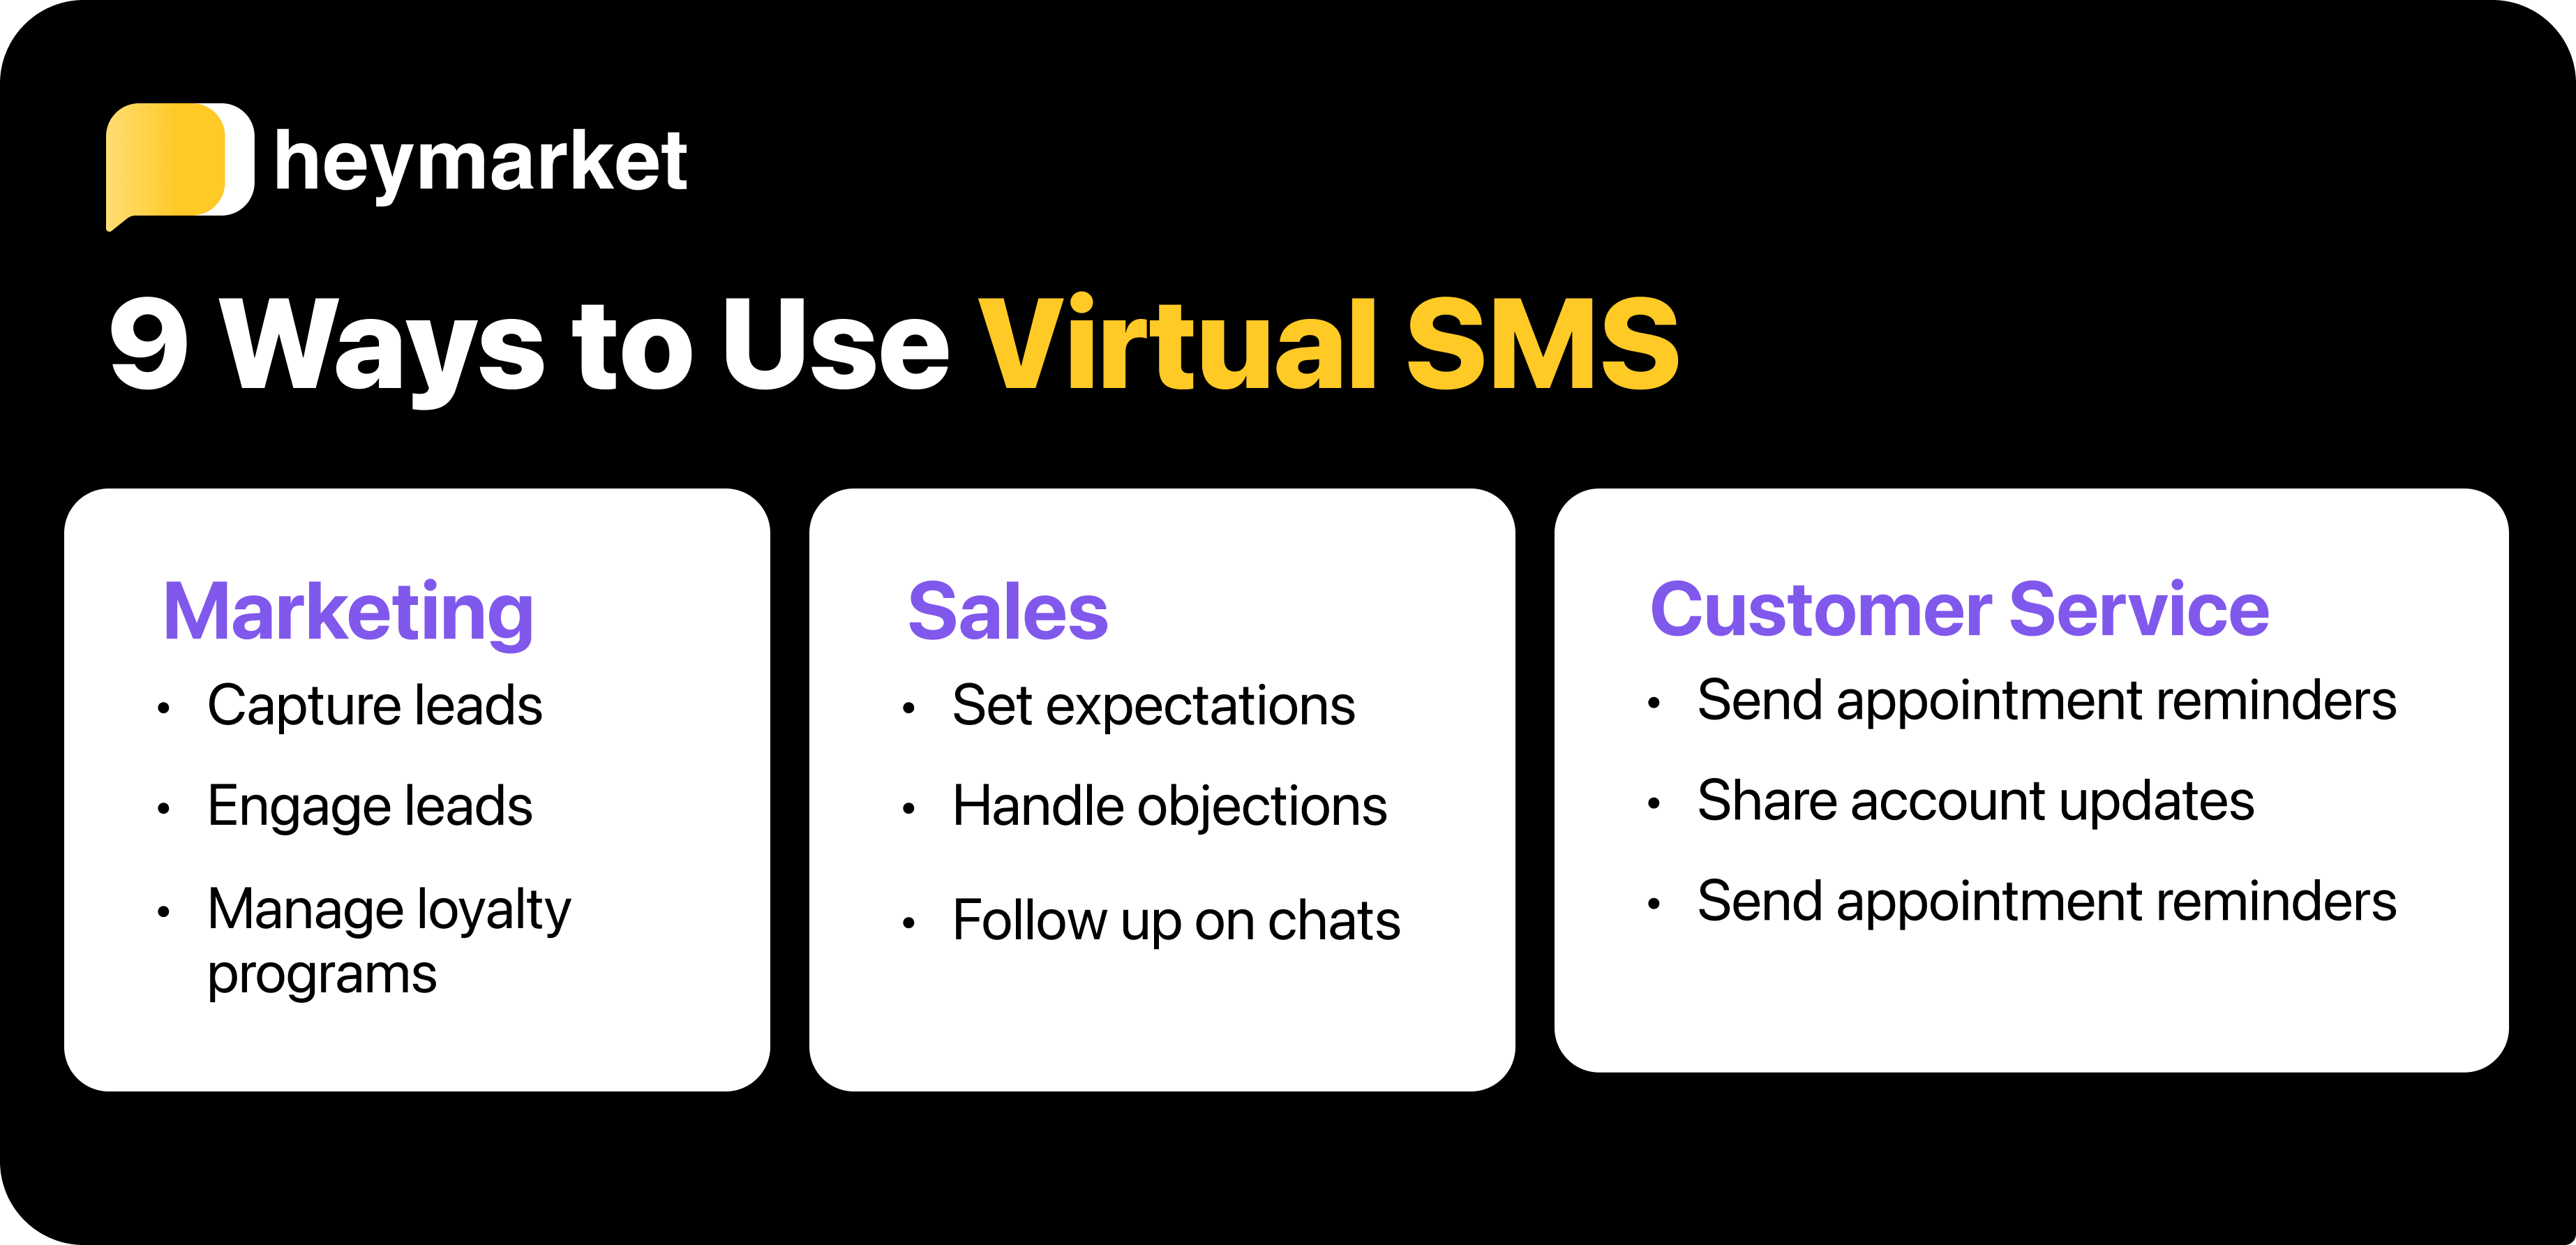 9 ways to use virtual SMS